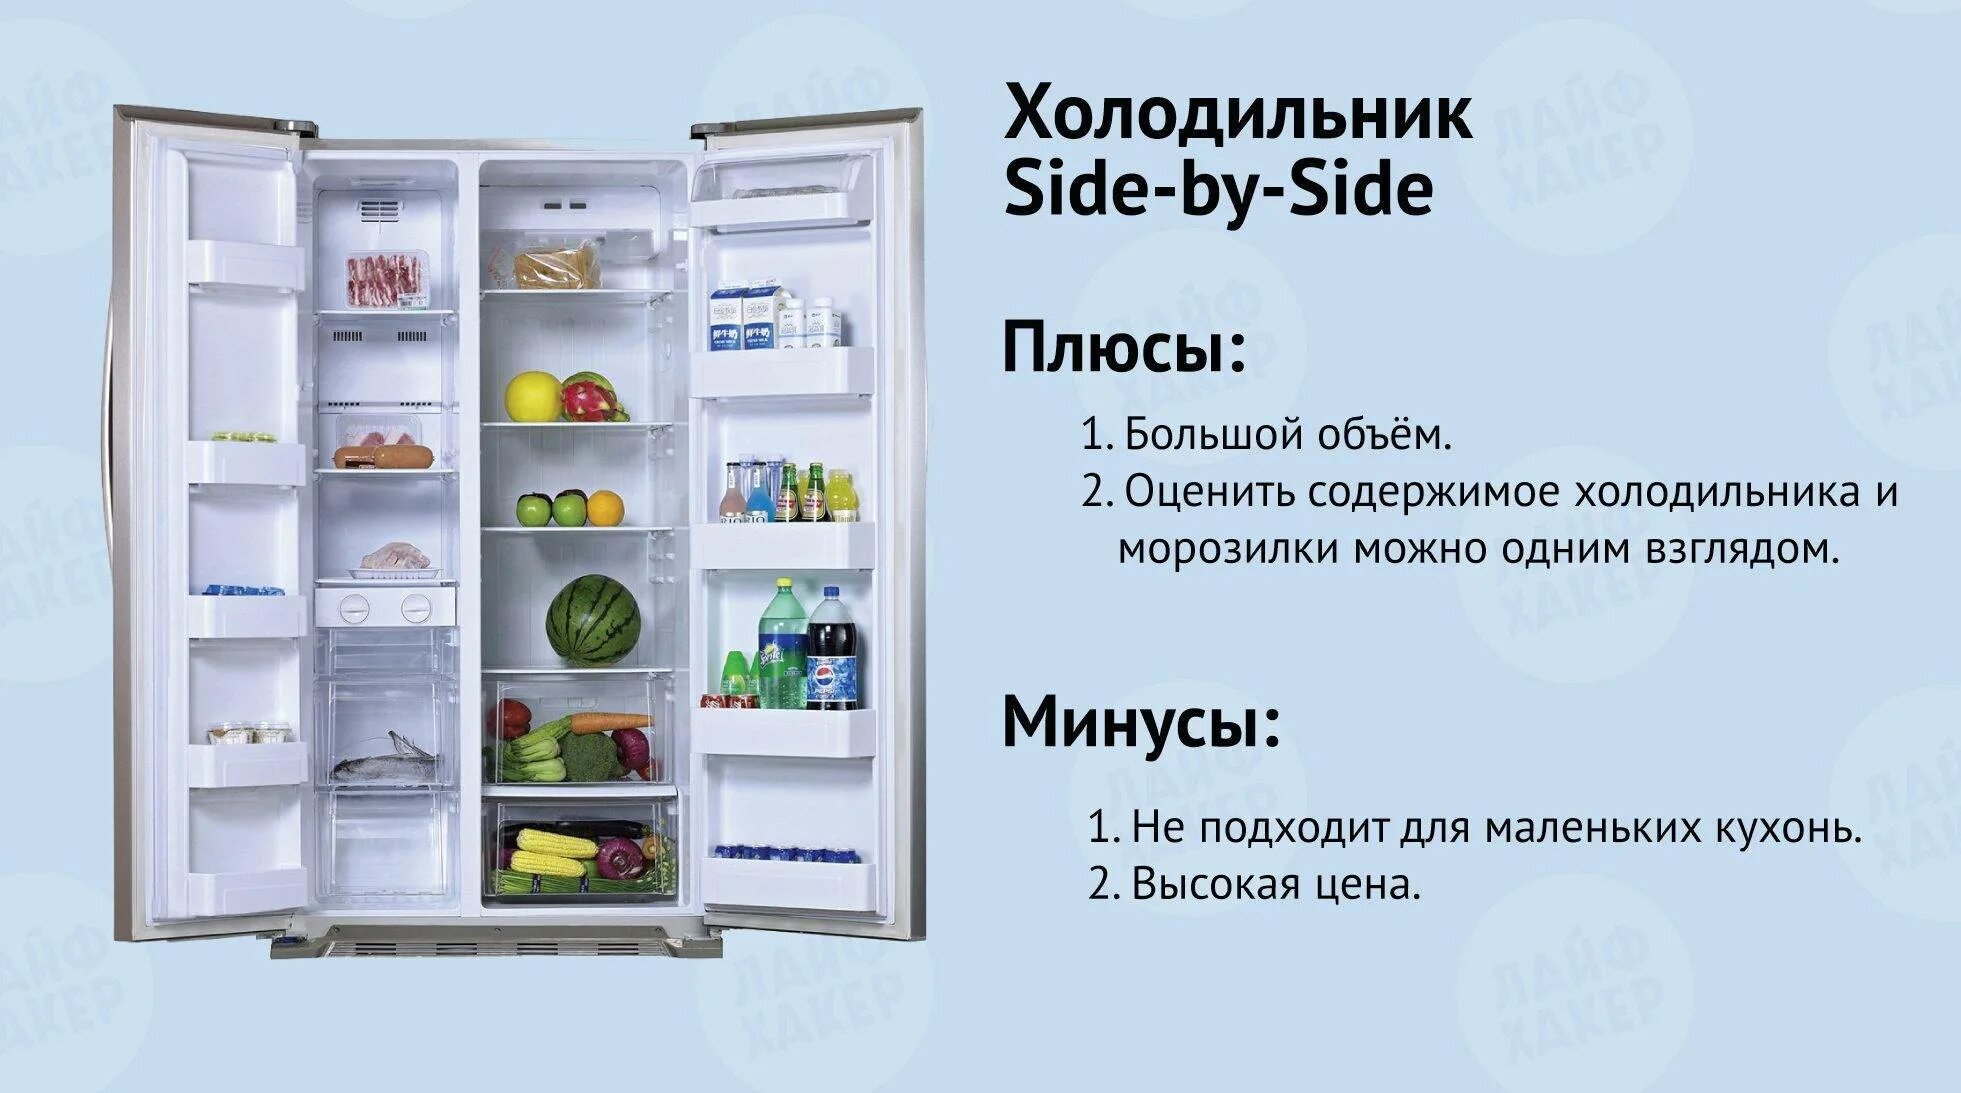 Изменение температуры в холодильнике. Минусы холодильника. Плюсы и минусы холодильника. Плюсы холодильника. Температура в холодильнике.